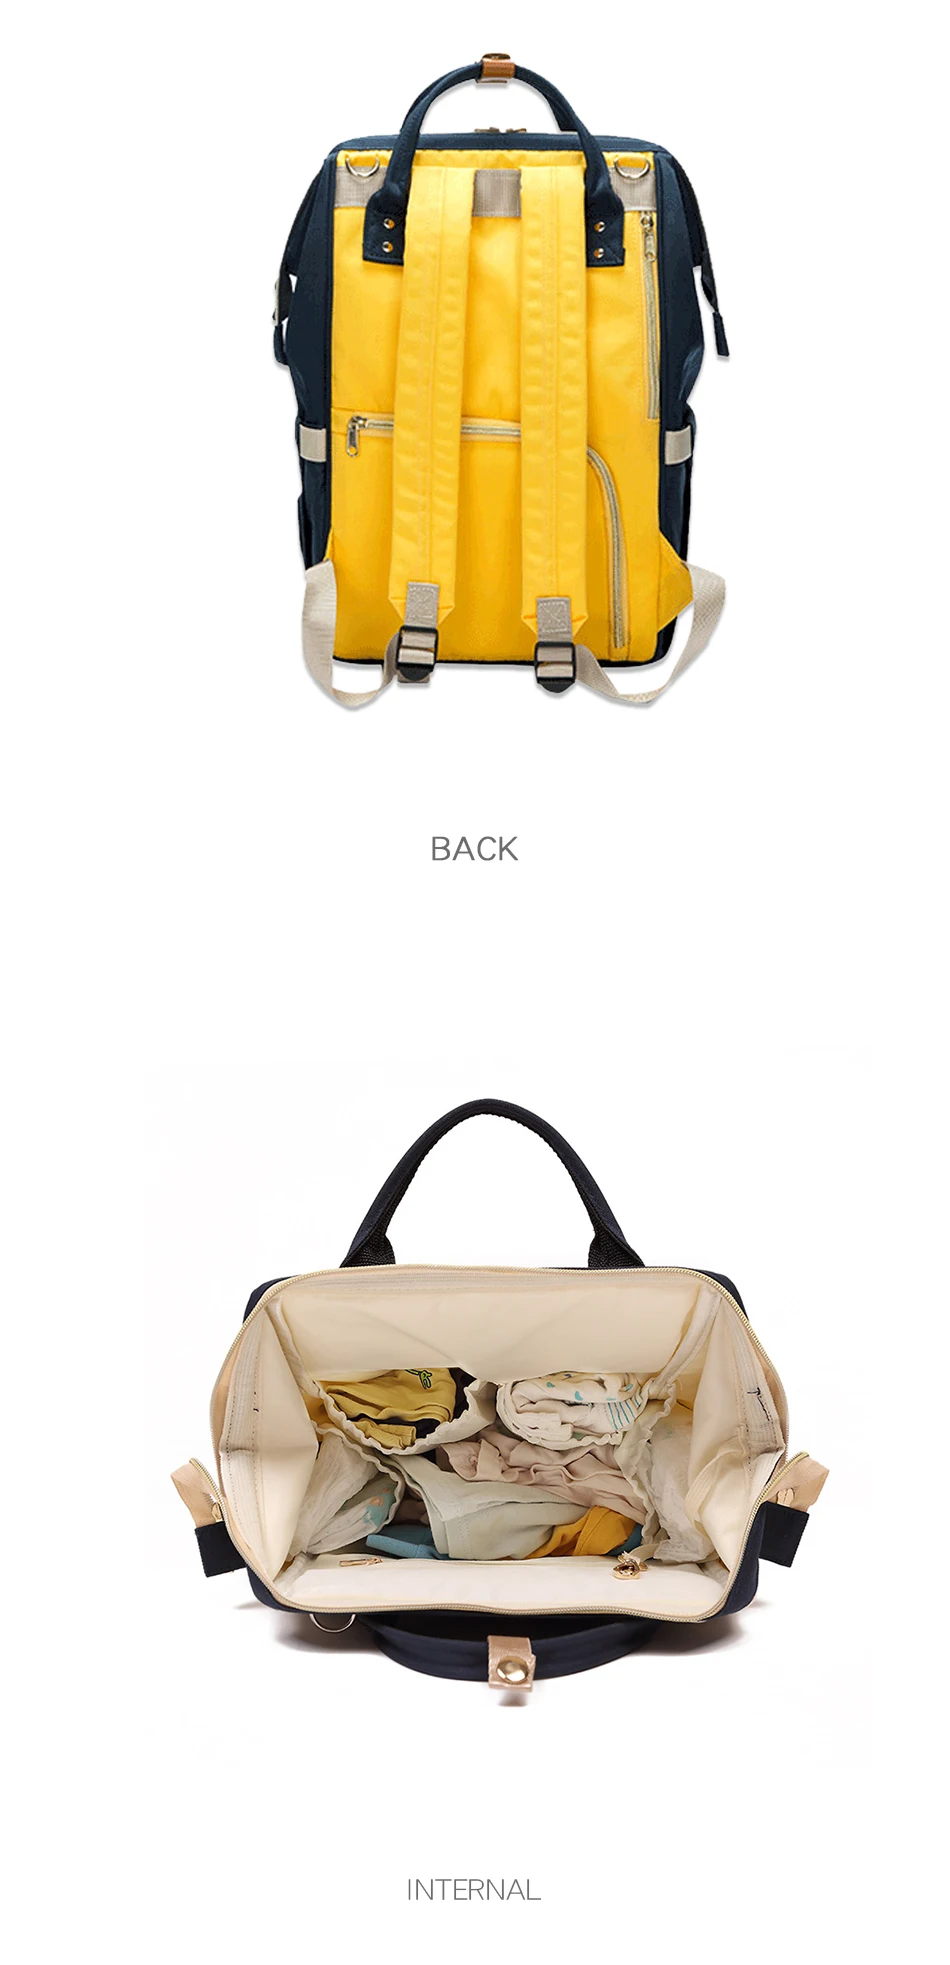 Lefur Для женщин рюкзак сумка для мамы Мода для беременных уход за младенцем сумки Мумия Многофункциональный путешествий мягкий рюкзак